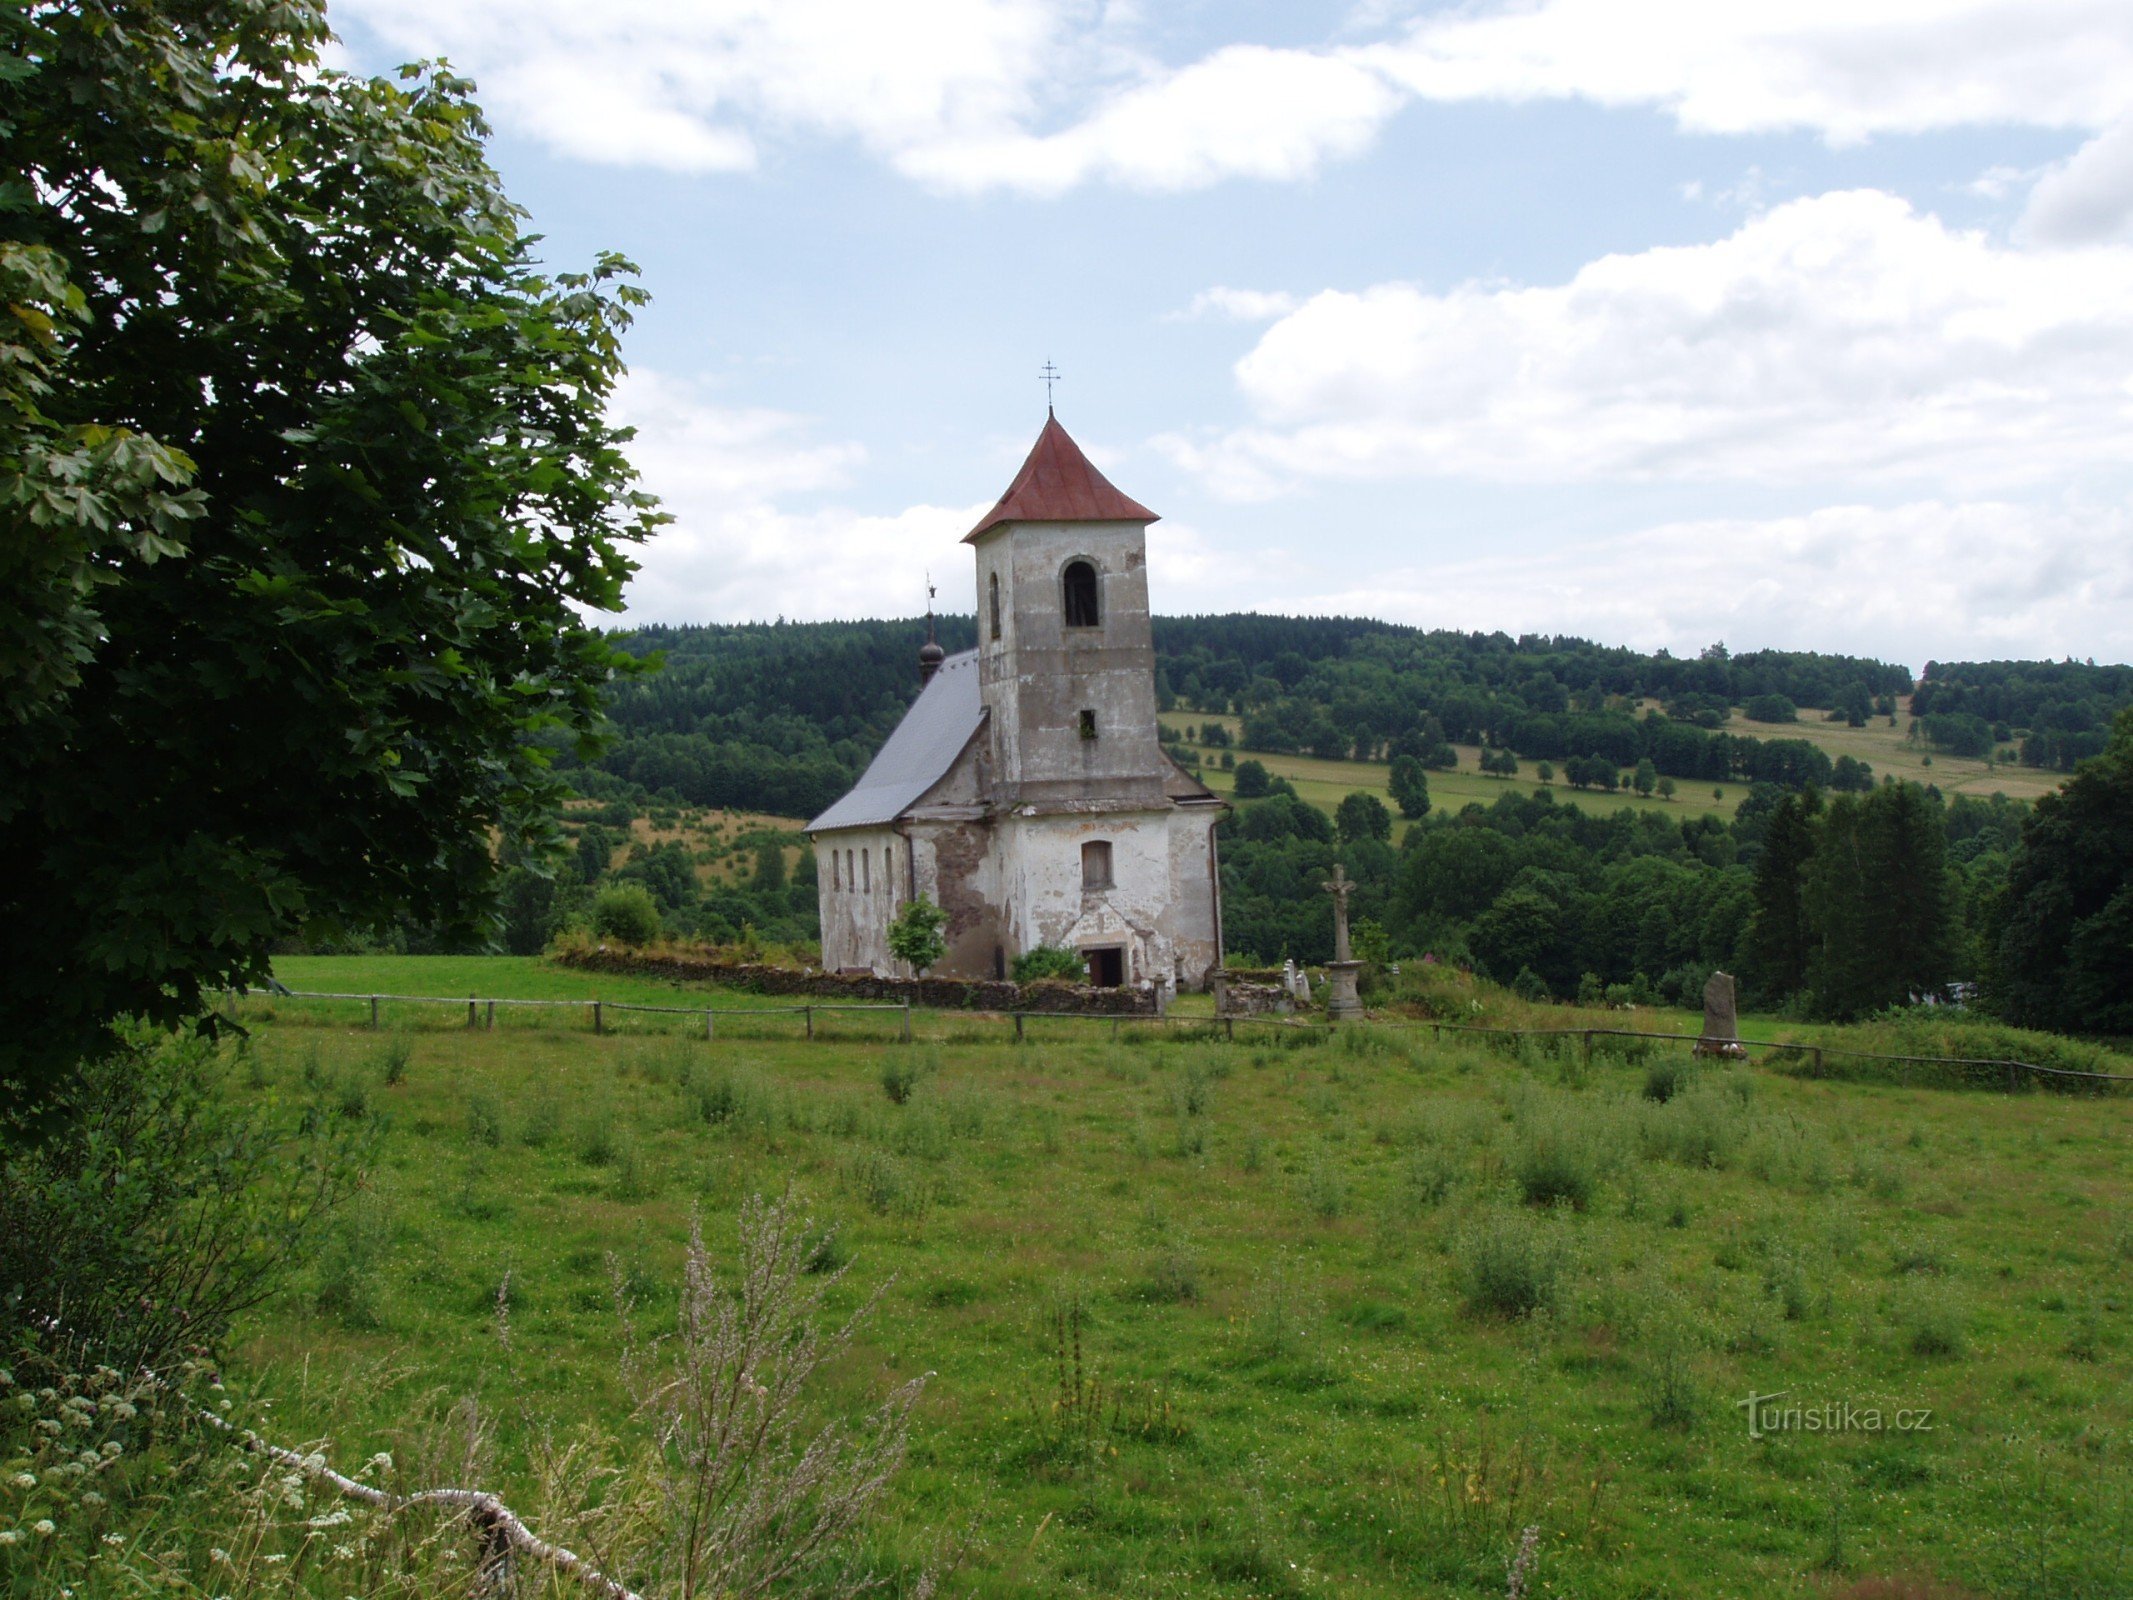 Vrchní Orlice - church of St. Jan Nepomucký